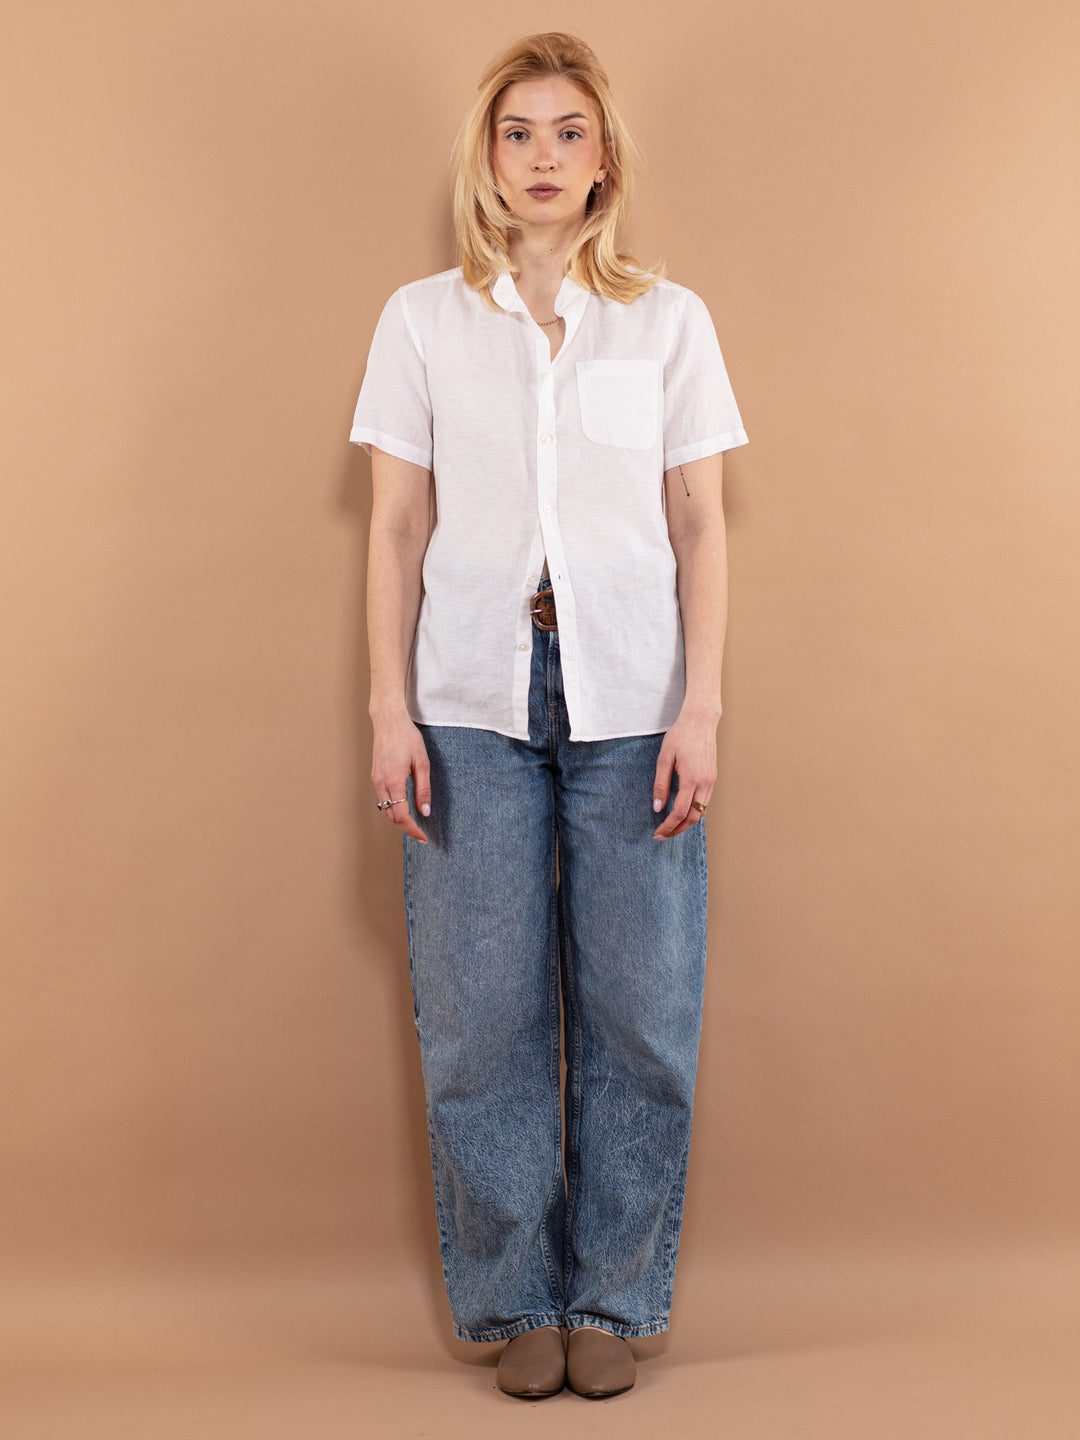 Linen Blend Shirt, Size M, White Linen Shirt, Short Sleeve Shirt, Vintage Linen Top, Classic Linen Blouse, Linen Clothing, Womens Clothing